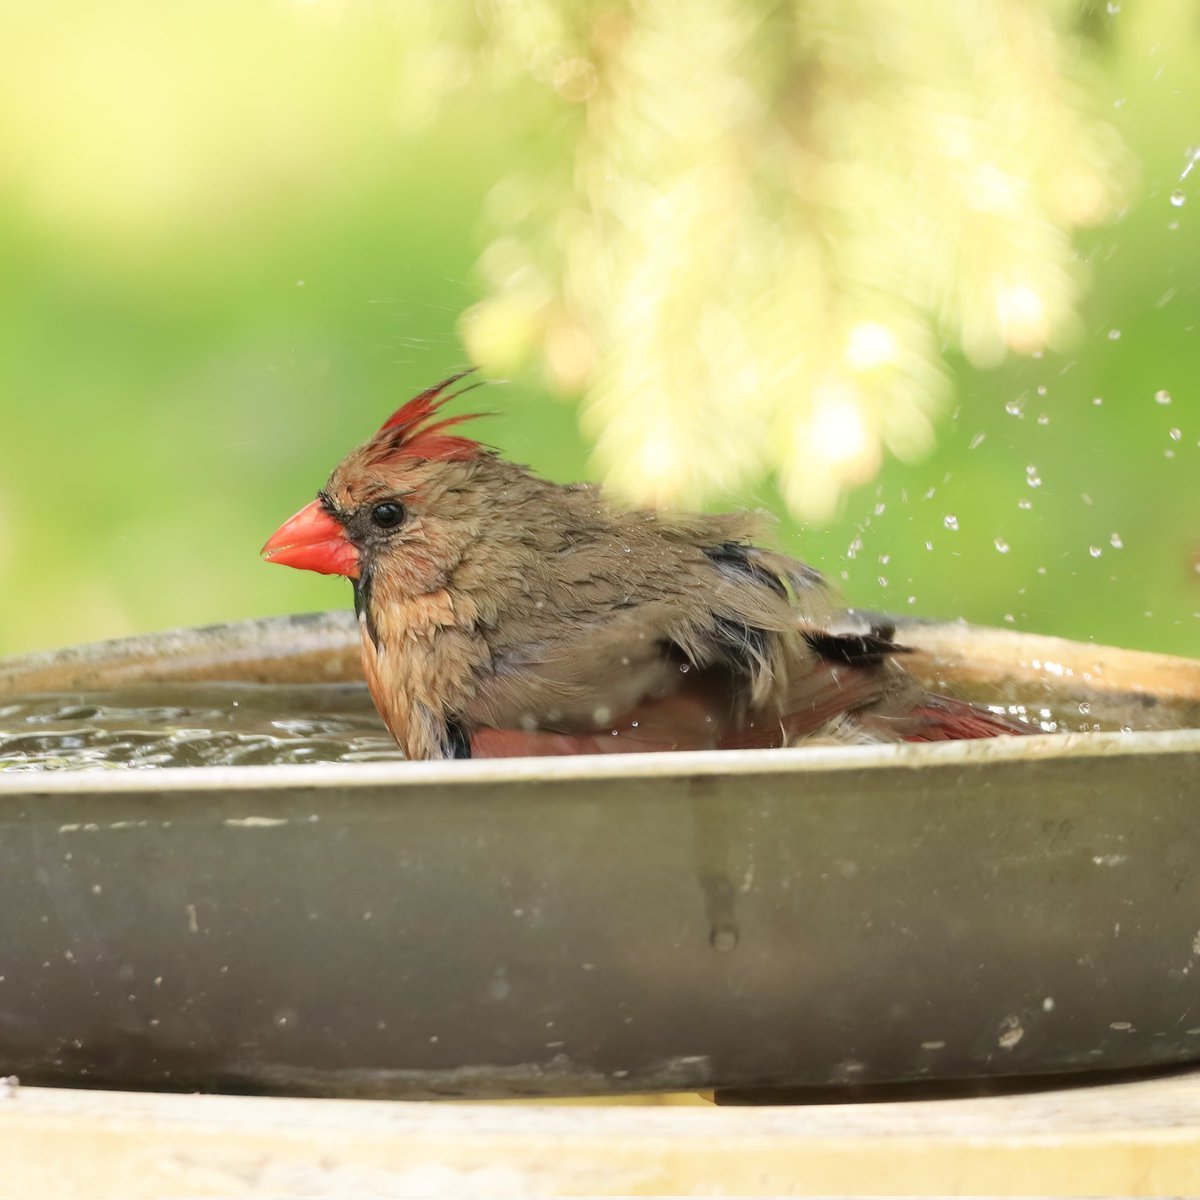 Bath time for this female cardinal...
#femalecardinals #femalecardinal #cardinals #cardinal #bathtime #bathtimefun #bath #birdlovers #bathtimefuntime #ohiobirdworld #ohiobirdlovers #birdwatching #birdwatchers #birdlife #birdwatchersdaily #birdwatcher #birdloversdaily